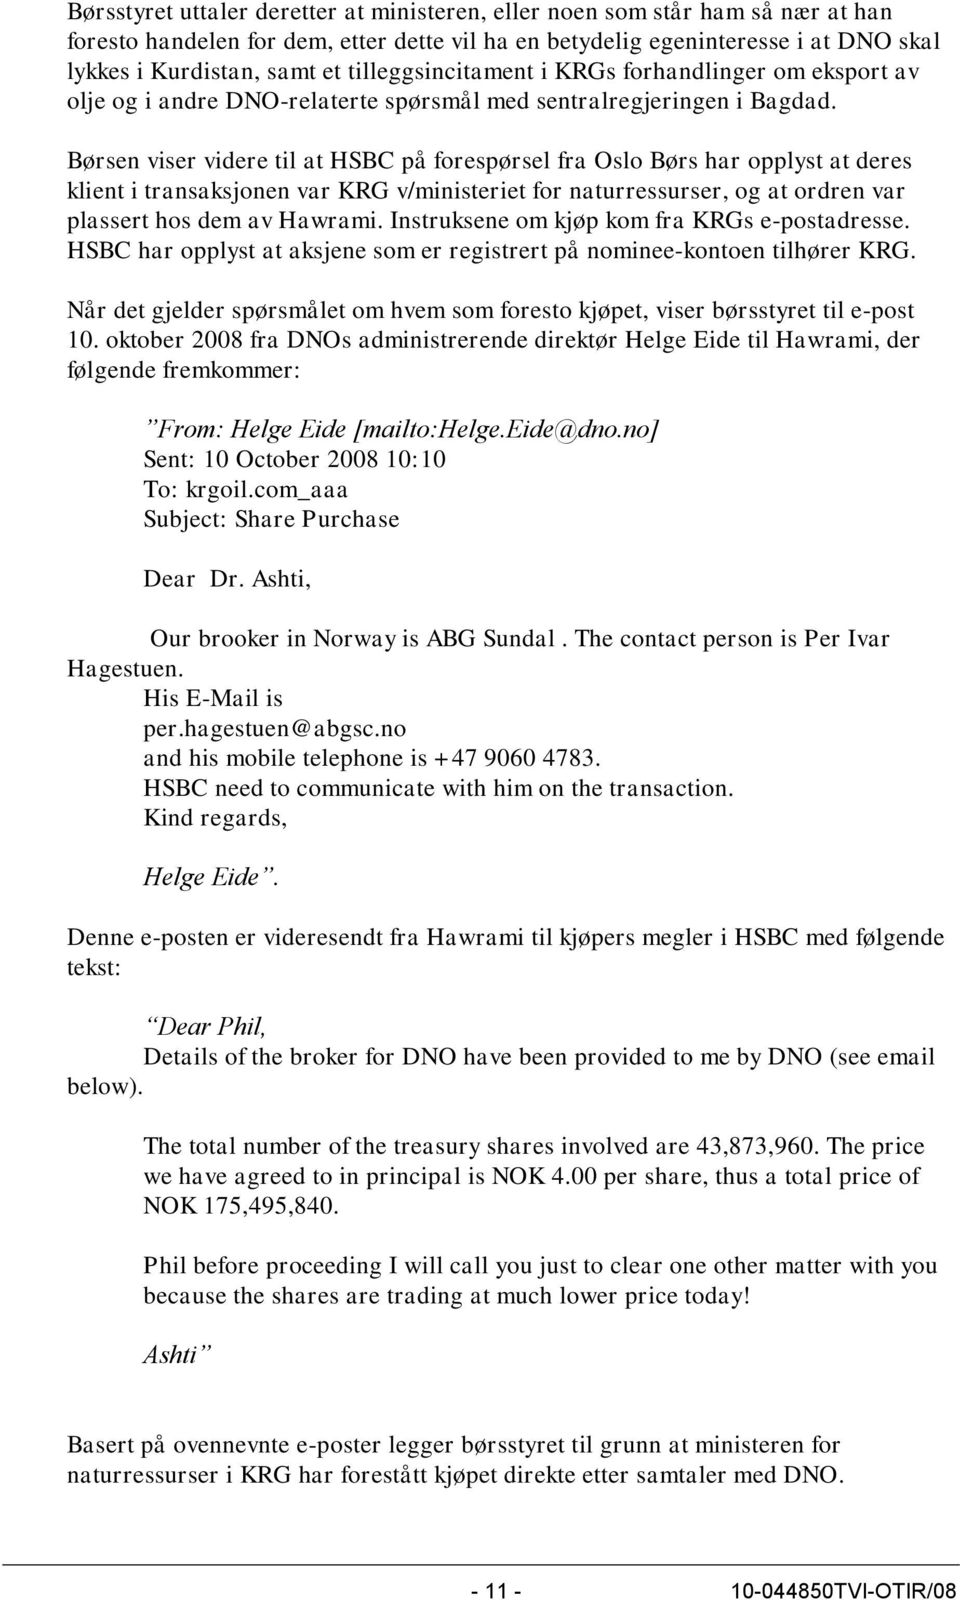 Børsen viser videre til at HSBC på forespørsel fra Oslo Børs har opplyst at deres klient i transaksjonen var KRG v/ministeriet for naturressurser, og at ordren var plassert hos dem av Hawrami.